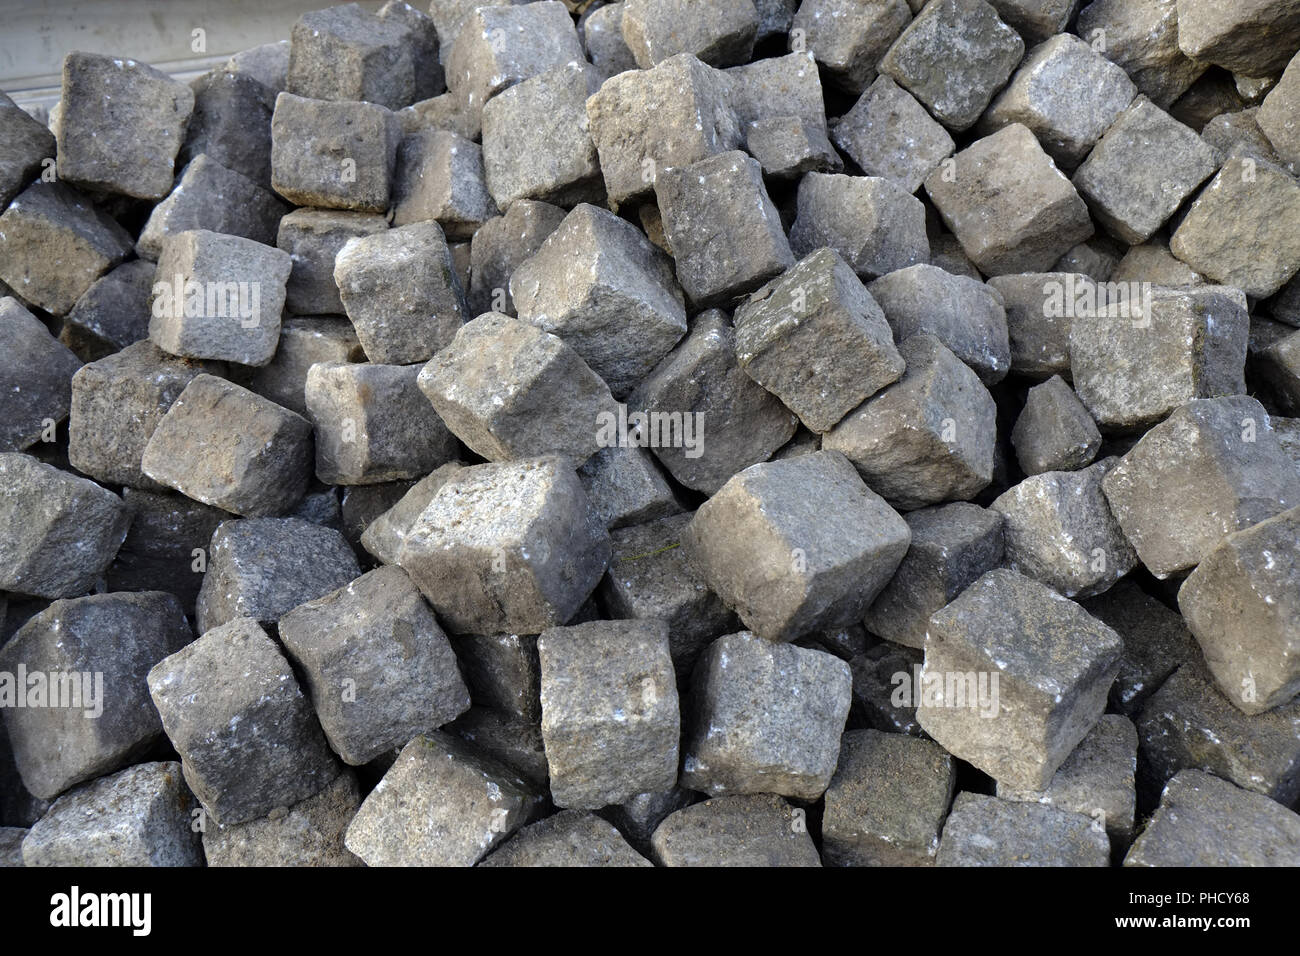 Cobblestones, paving stones Stock Photo